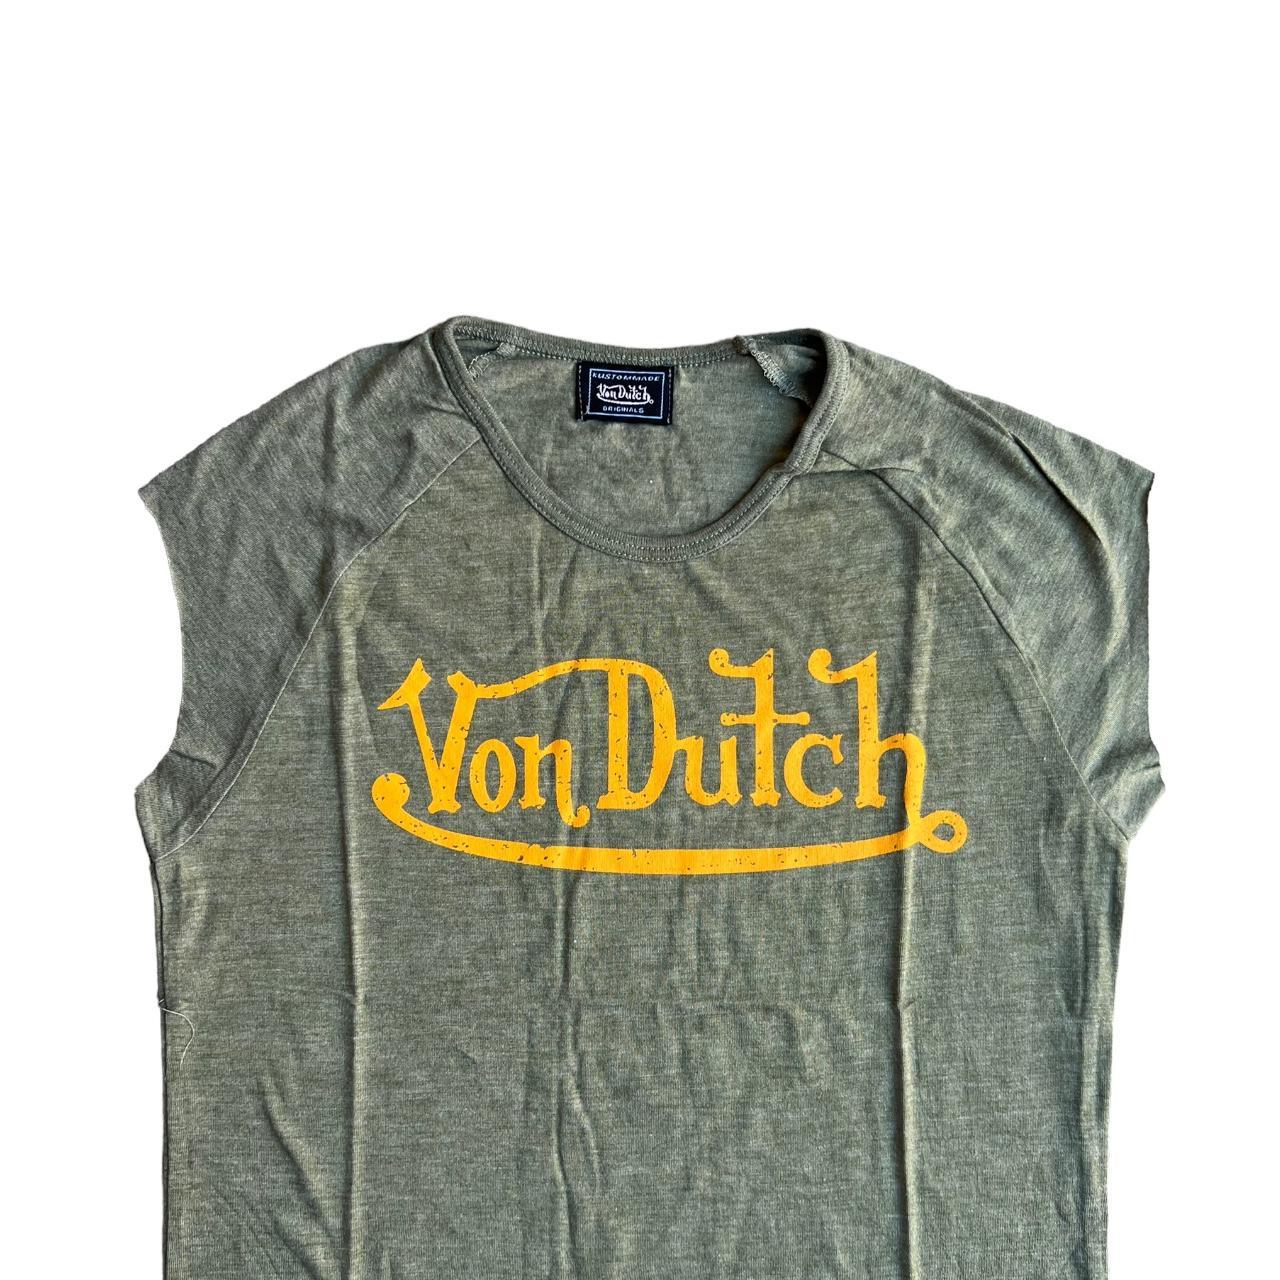 Von Dutch Women's Shirt | Depop